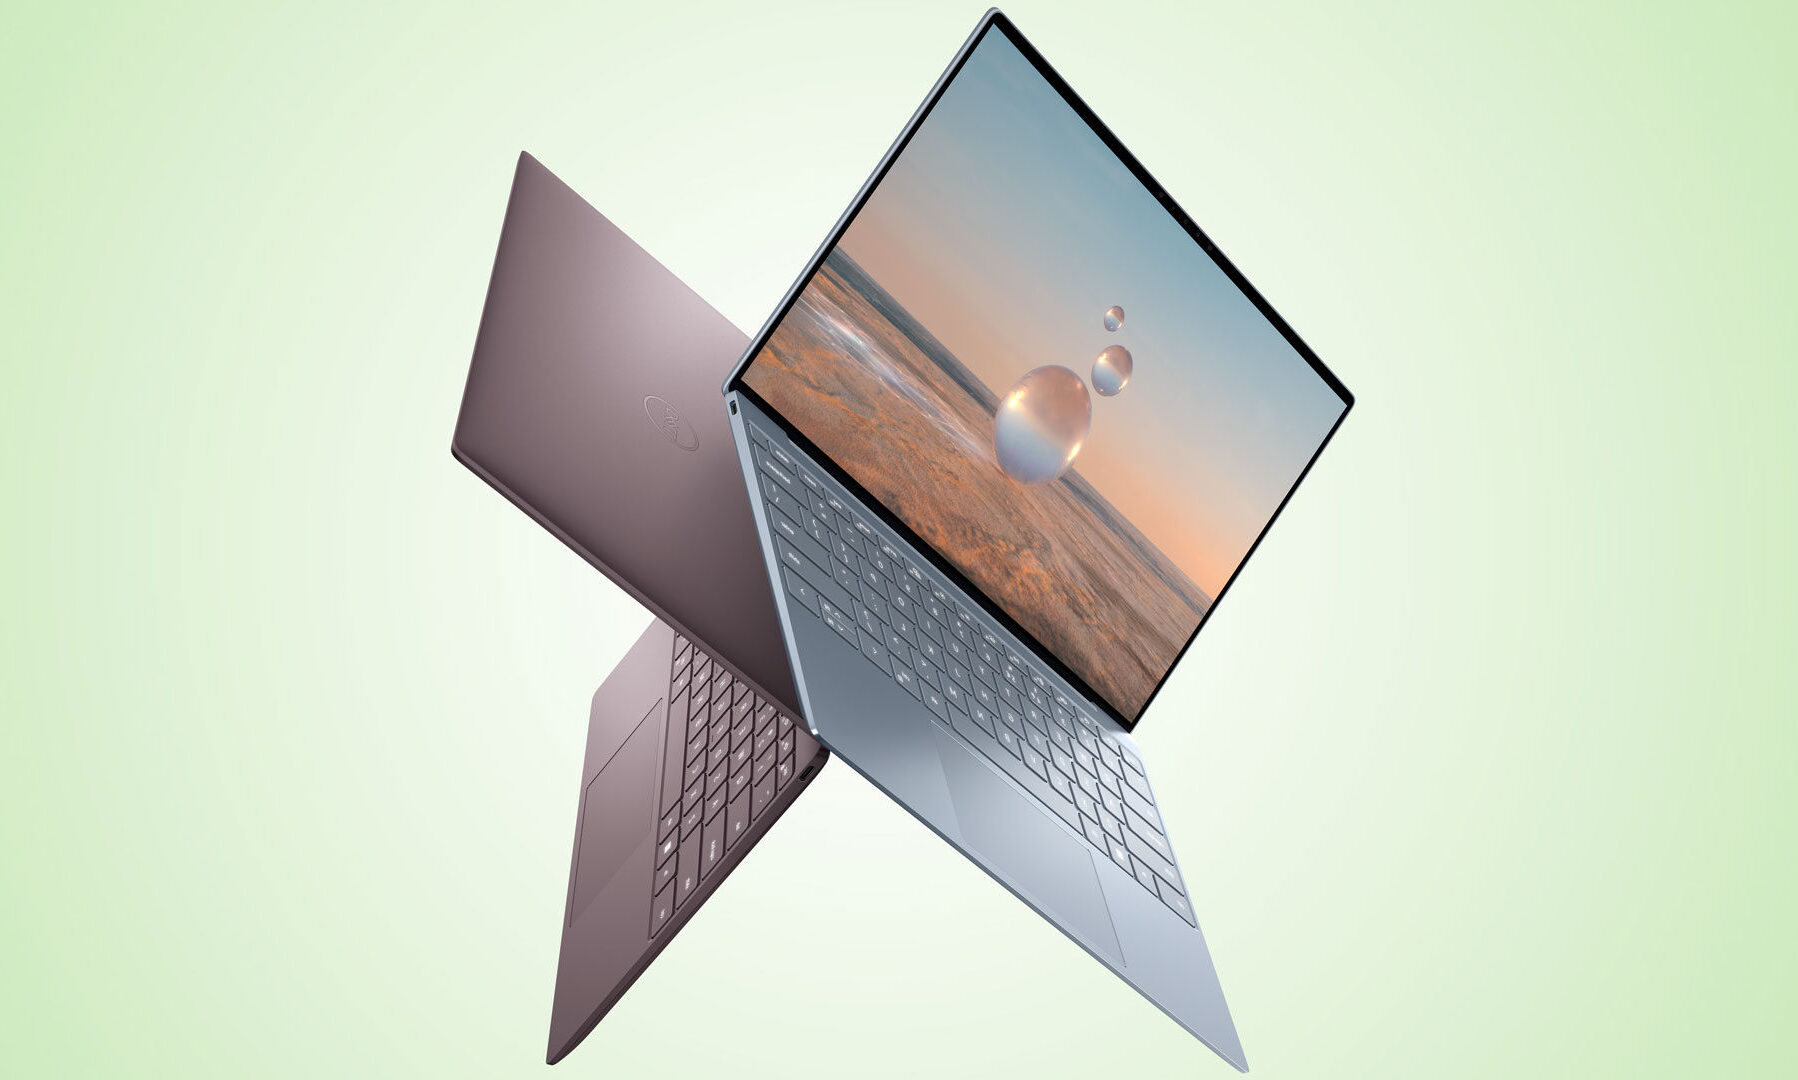 Harga Toko Laptop di Palu Murah dan Terbaik Mulai 2,4jt yang Menawarkan Berbagai Merk Asus, Acer dan Lainnya Termasuk Type Notebook Beserta Sparepartnya 2023